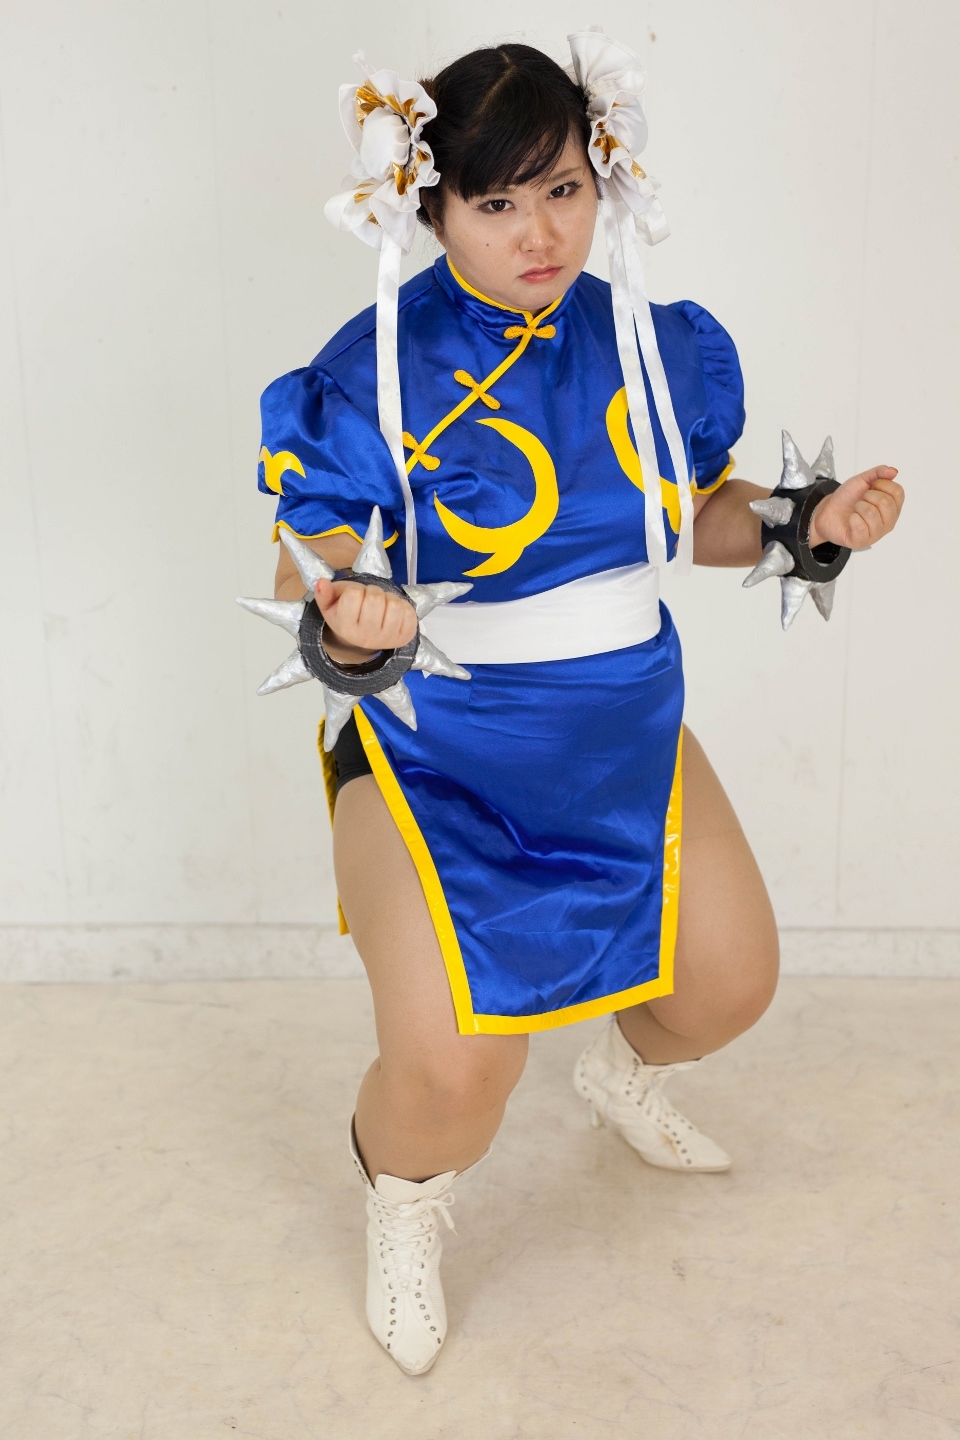 (渡辺さくらん) FIGHT FAT LADY (Sakuran Watanabe) (Mai Shiranui - Fatal Fury) (Chun-Li - Street Fighter) 99